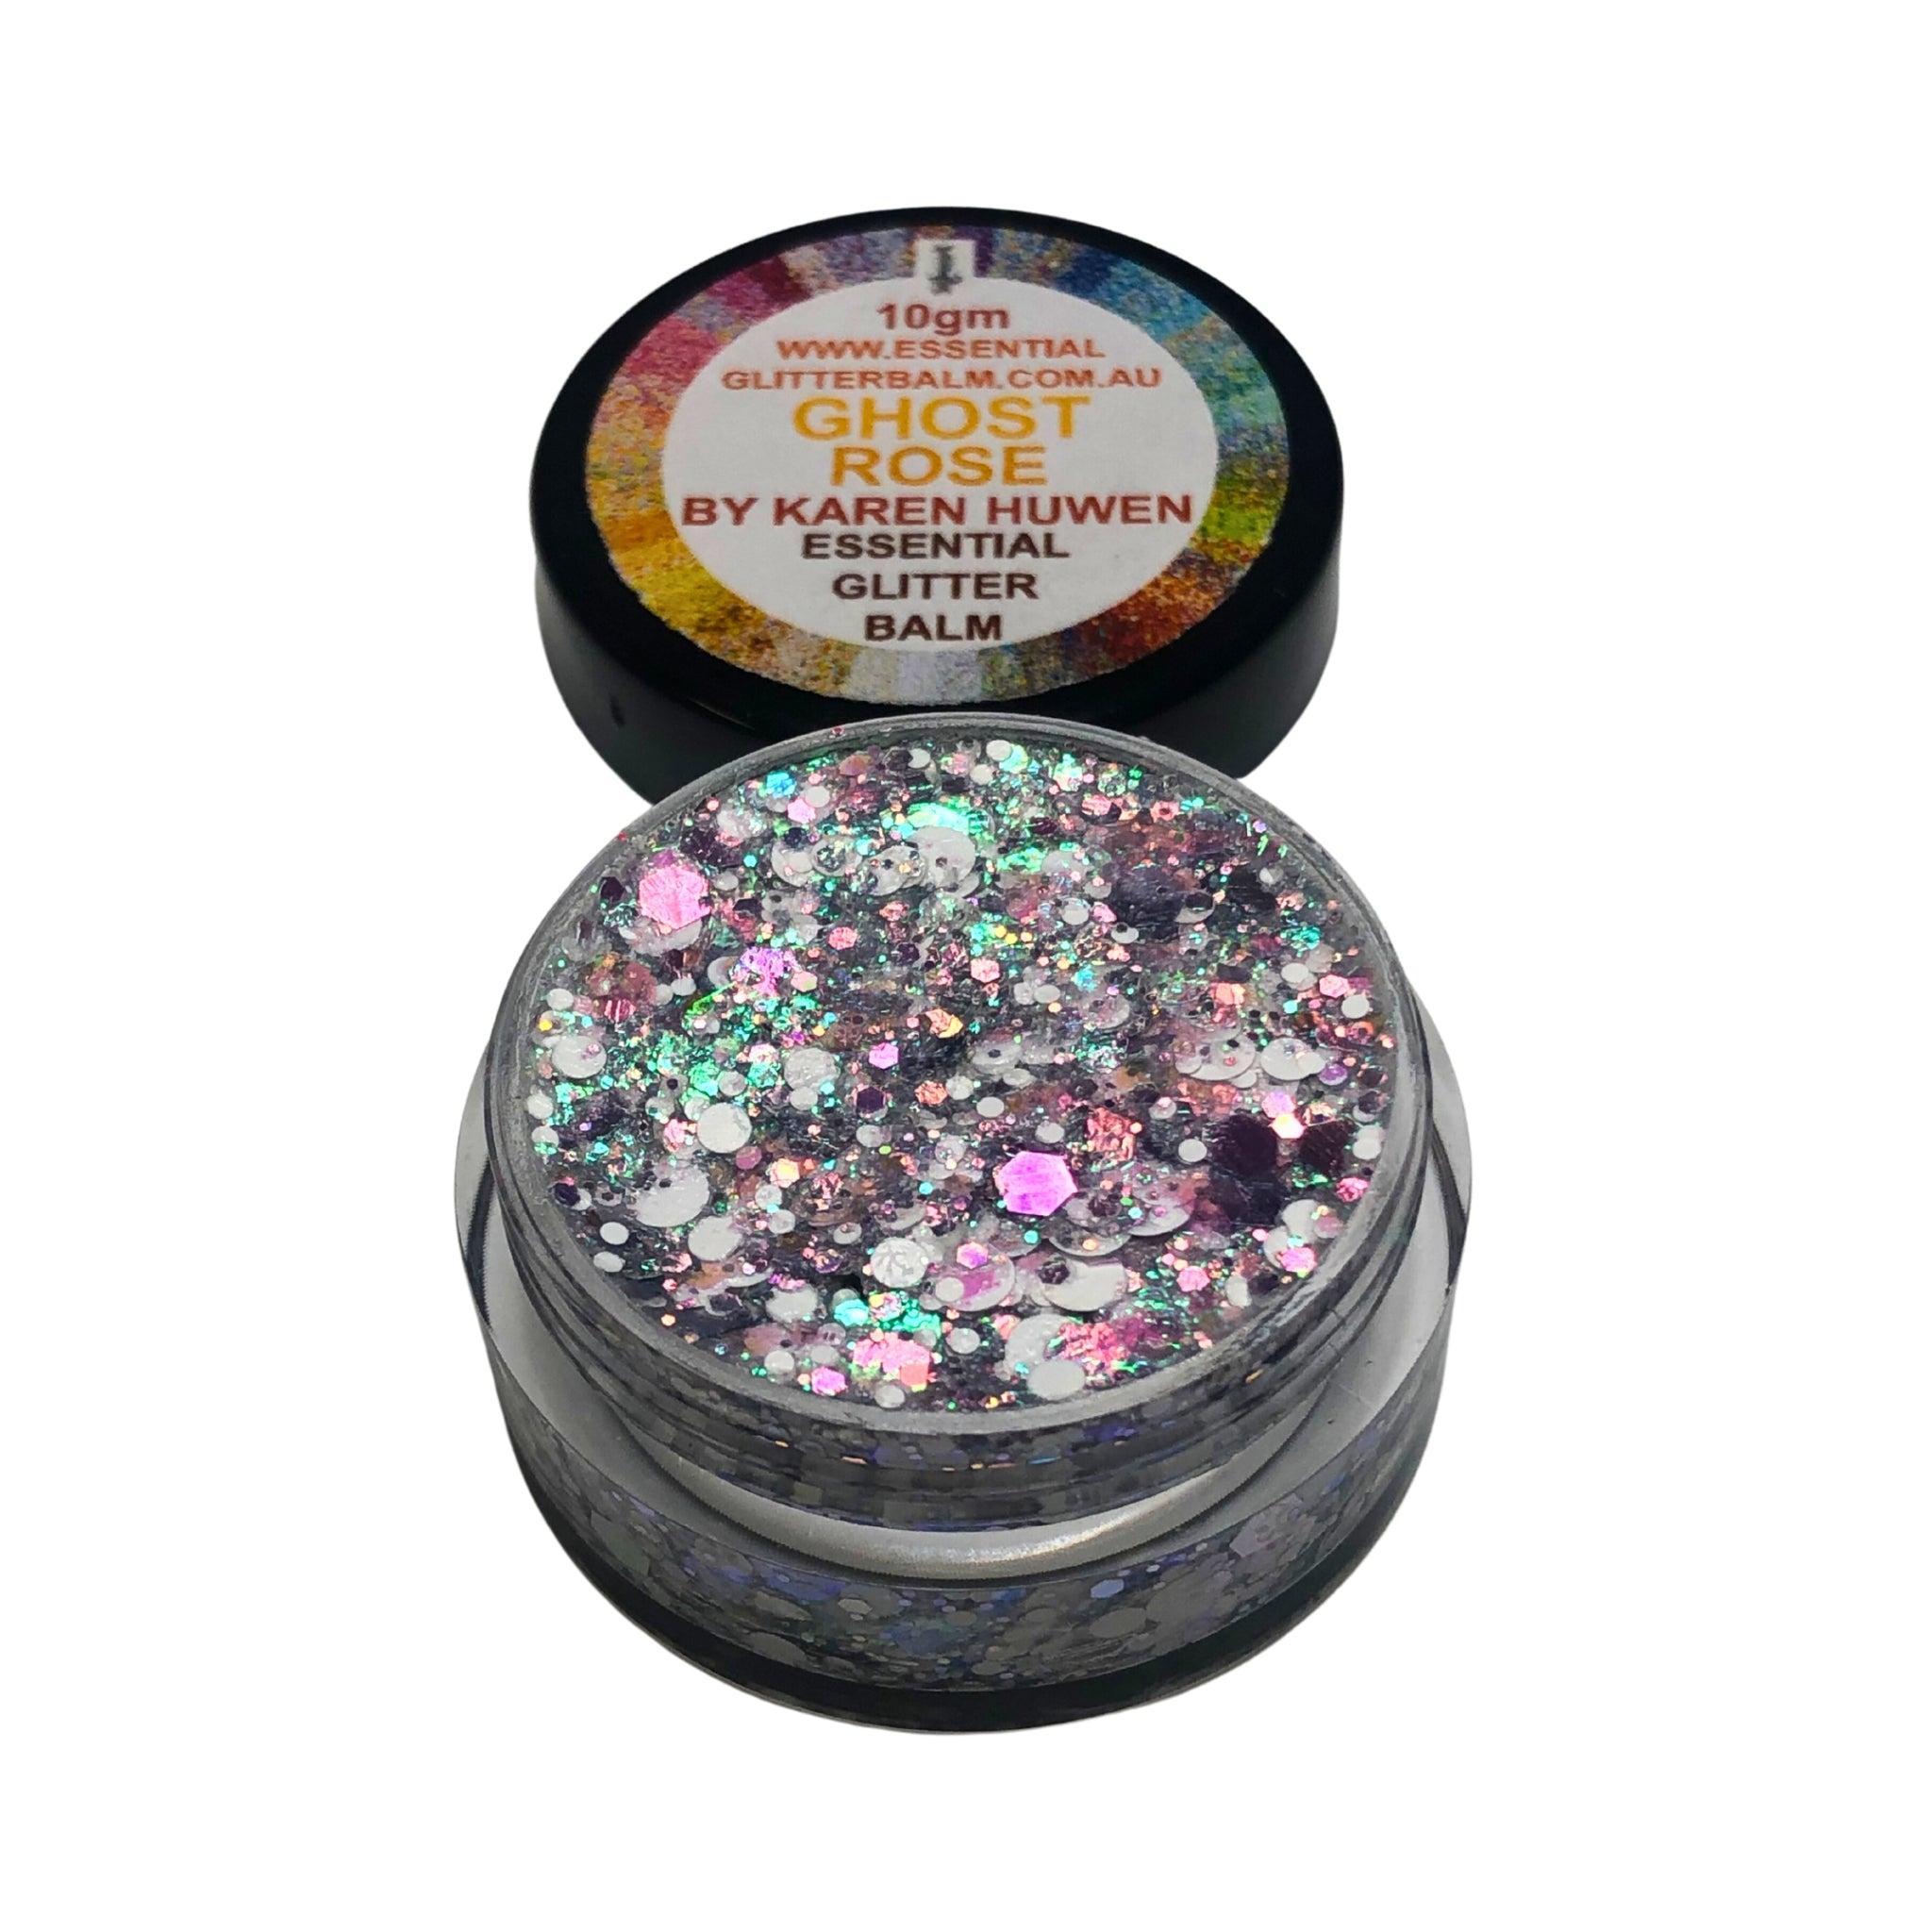 Essential Glitter Balm - GHOST ROSE